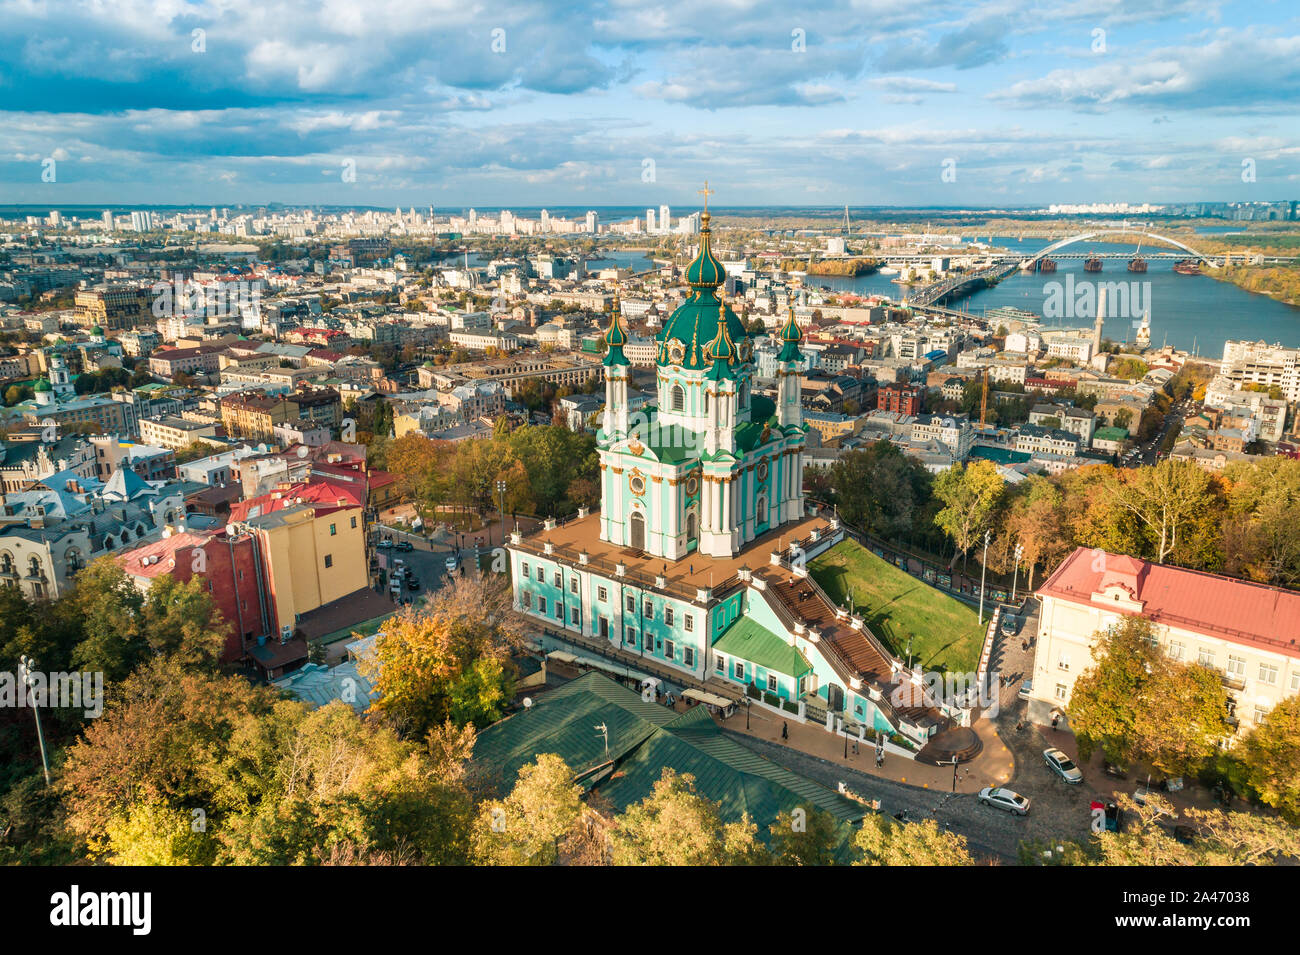 Antenne Herbst Landschaft Blick auf Saint Andrew's Church in 2019, Kiew, Ukraine. Berühmte religiöse und touristische Ort in Kiew. Stockfoto